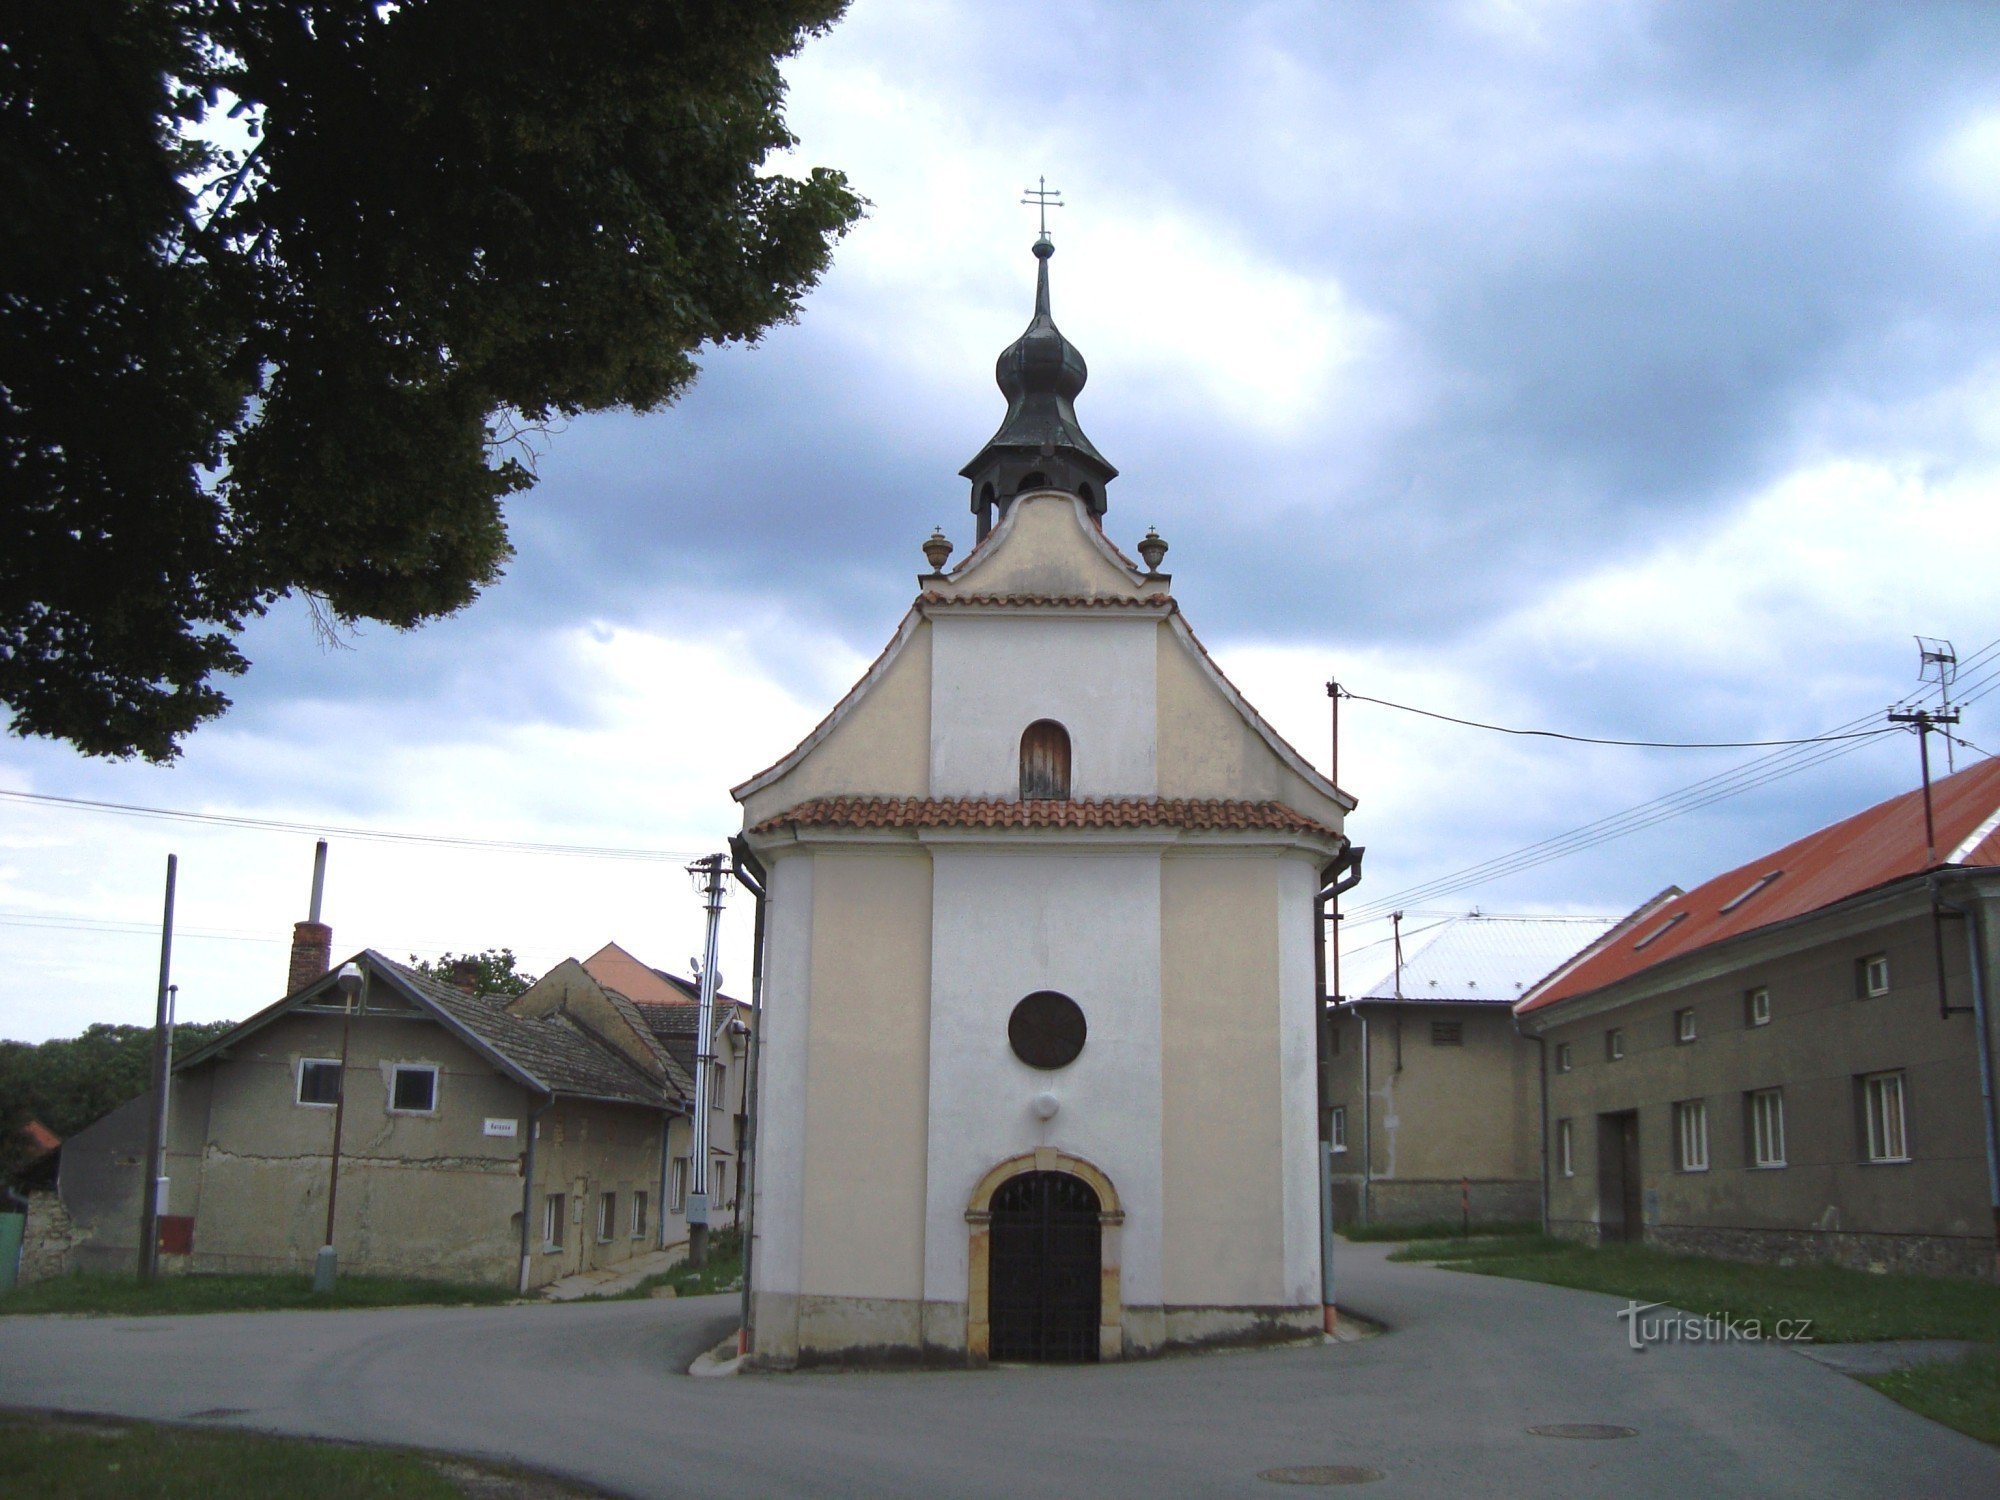 Nemilany-naczepa z kaplicą św. Jana i Pawła z 1825 r.- Fot. Ulrych Mir.